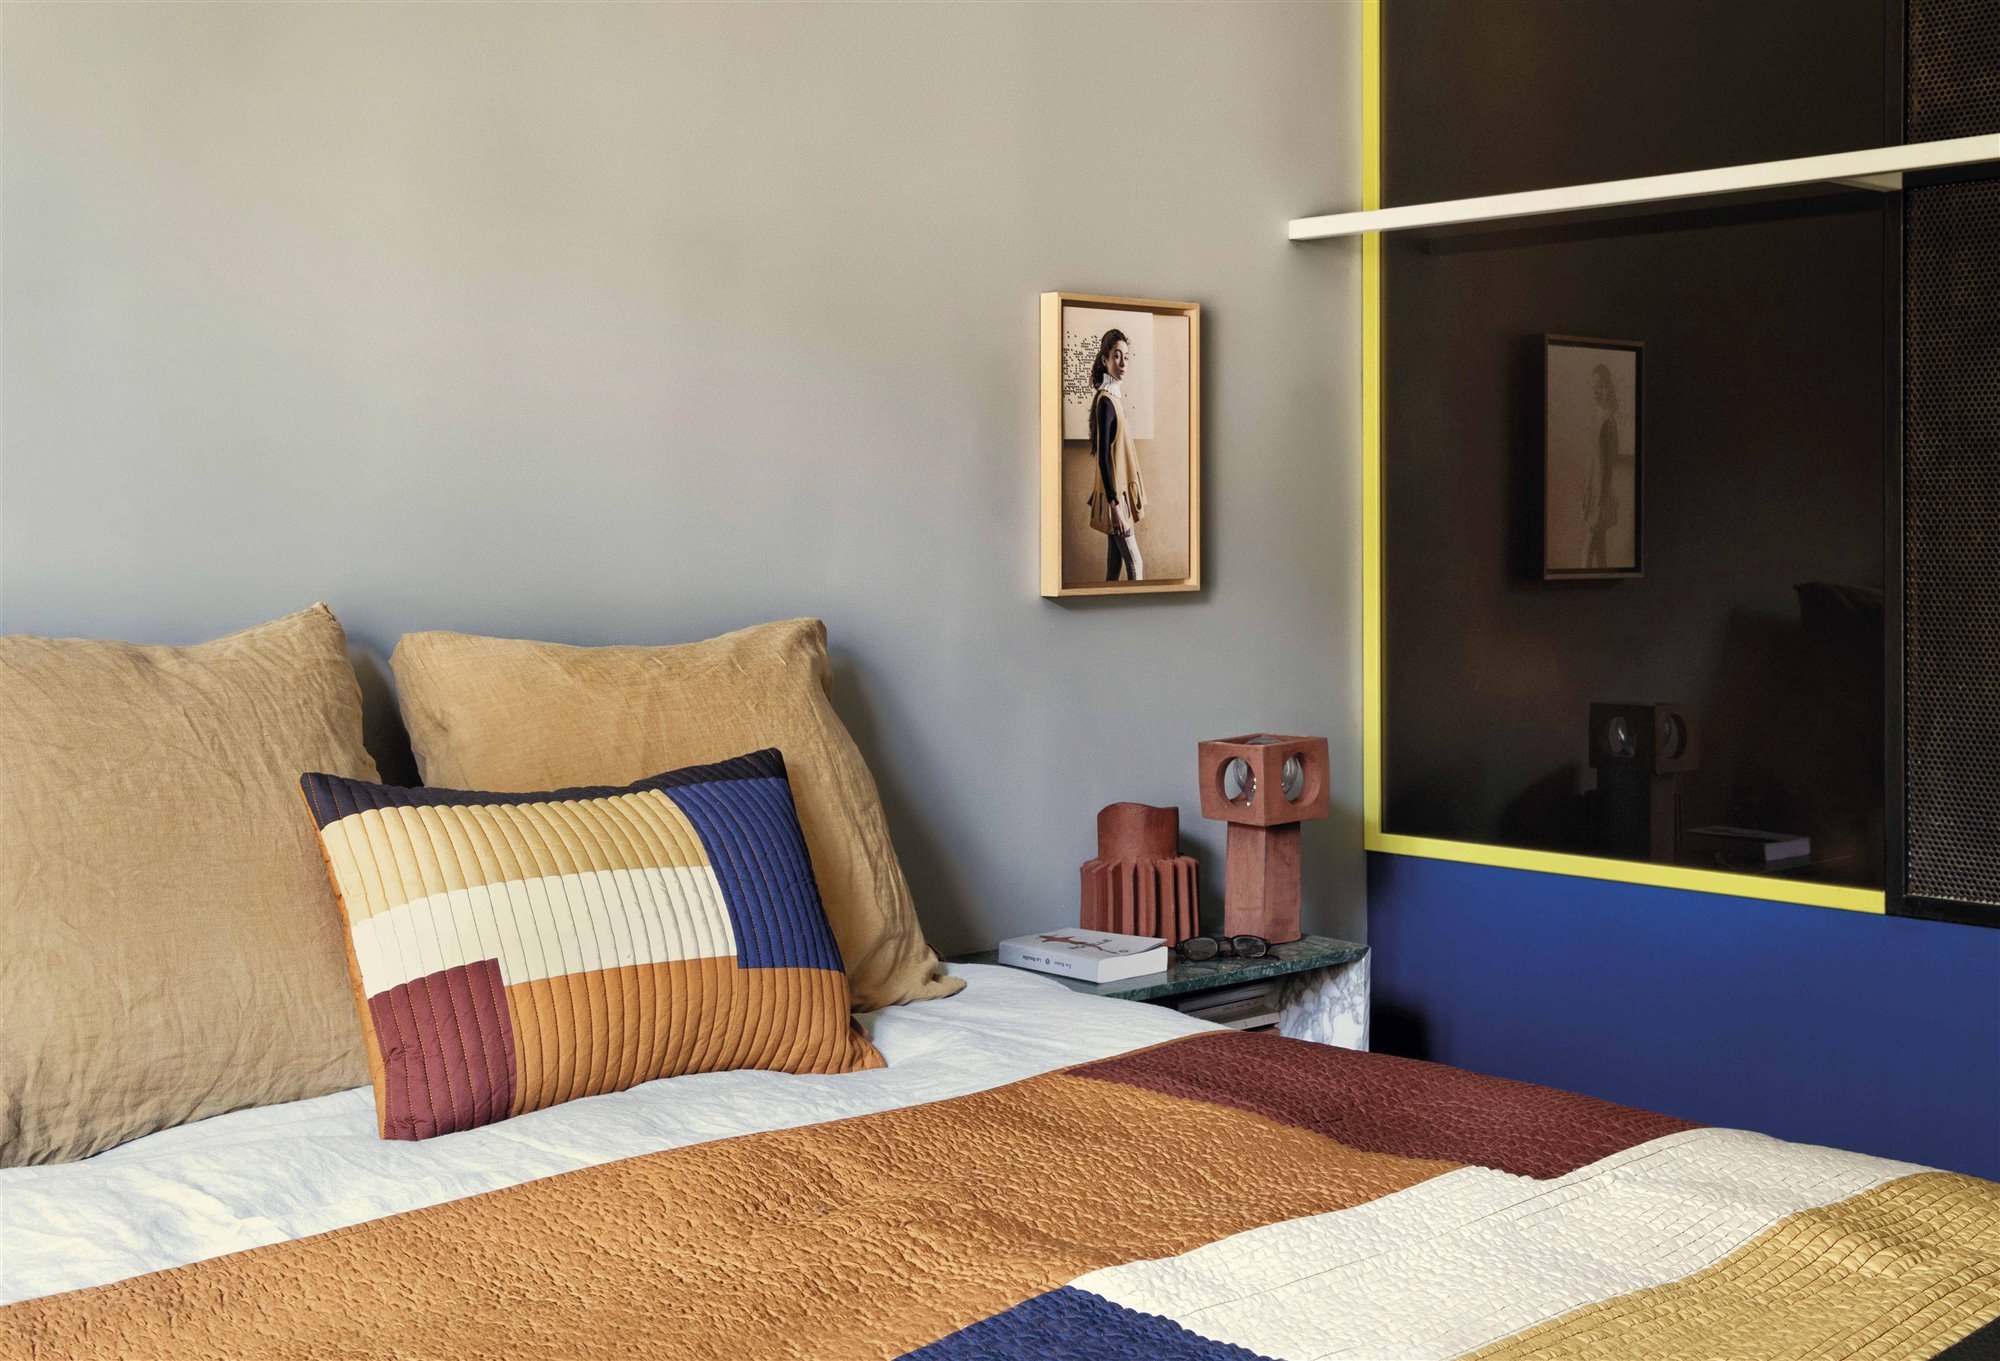 dormitorio con ropa de cama con uso de texturas y colores